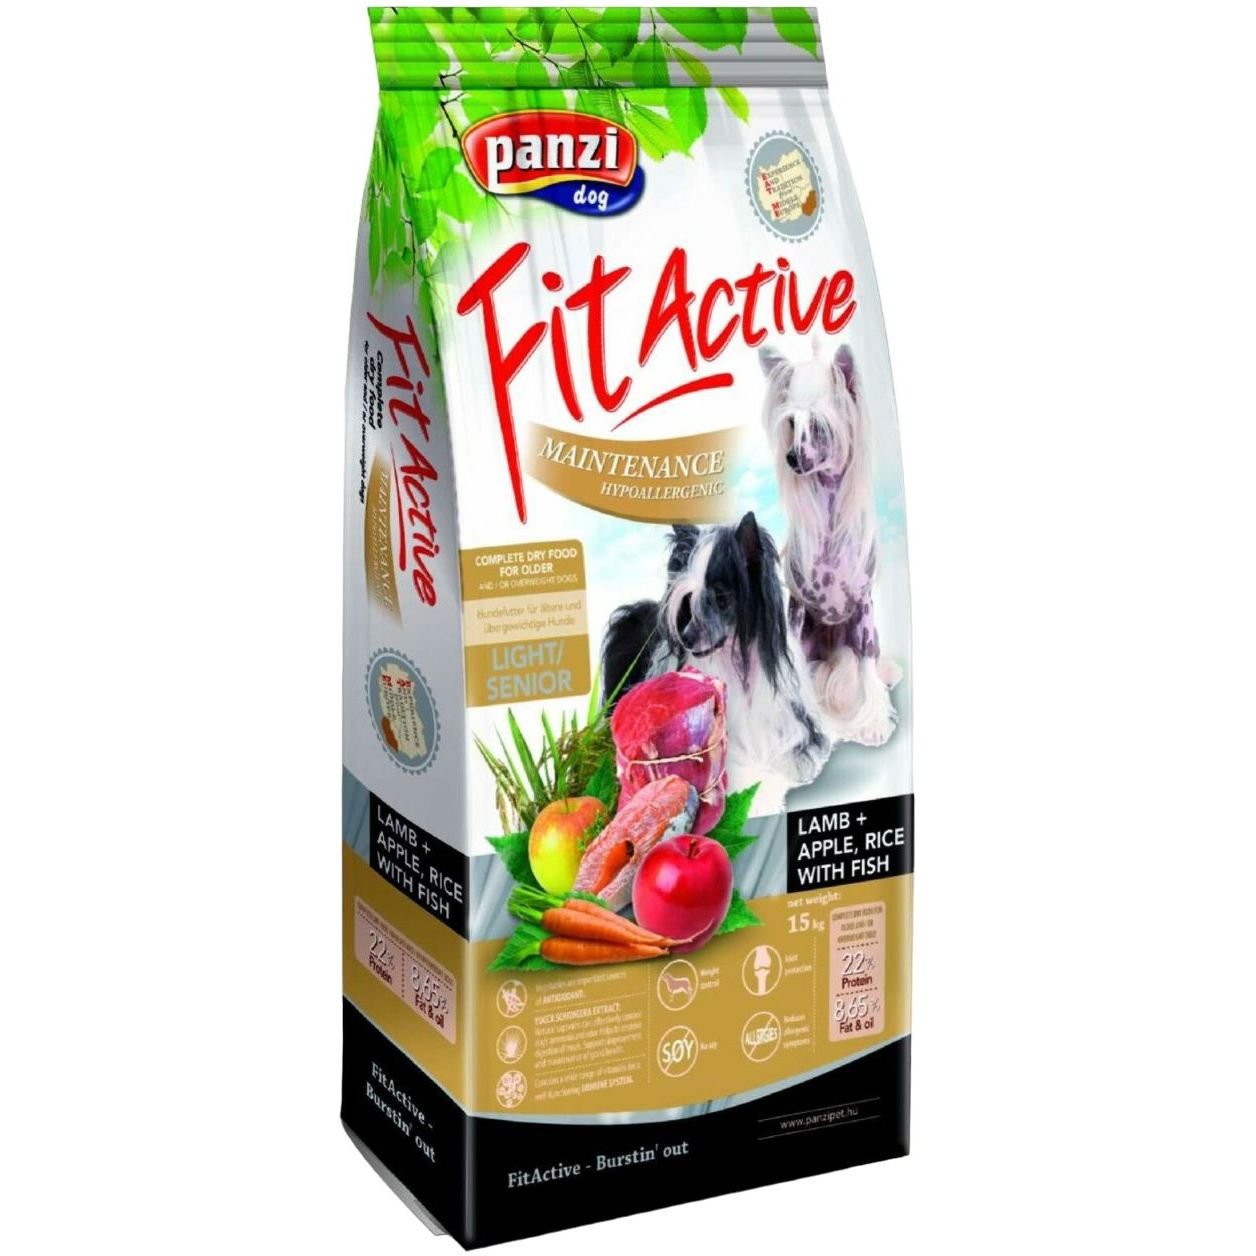 Сухой корм для собак FitActive B.C. Light/Senior, гипоаллергенный, с ягненком, 15 кг - фото 1